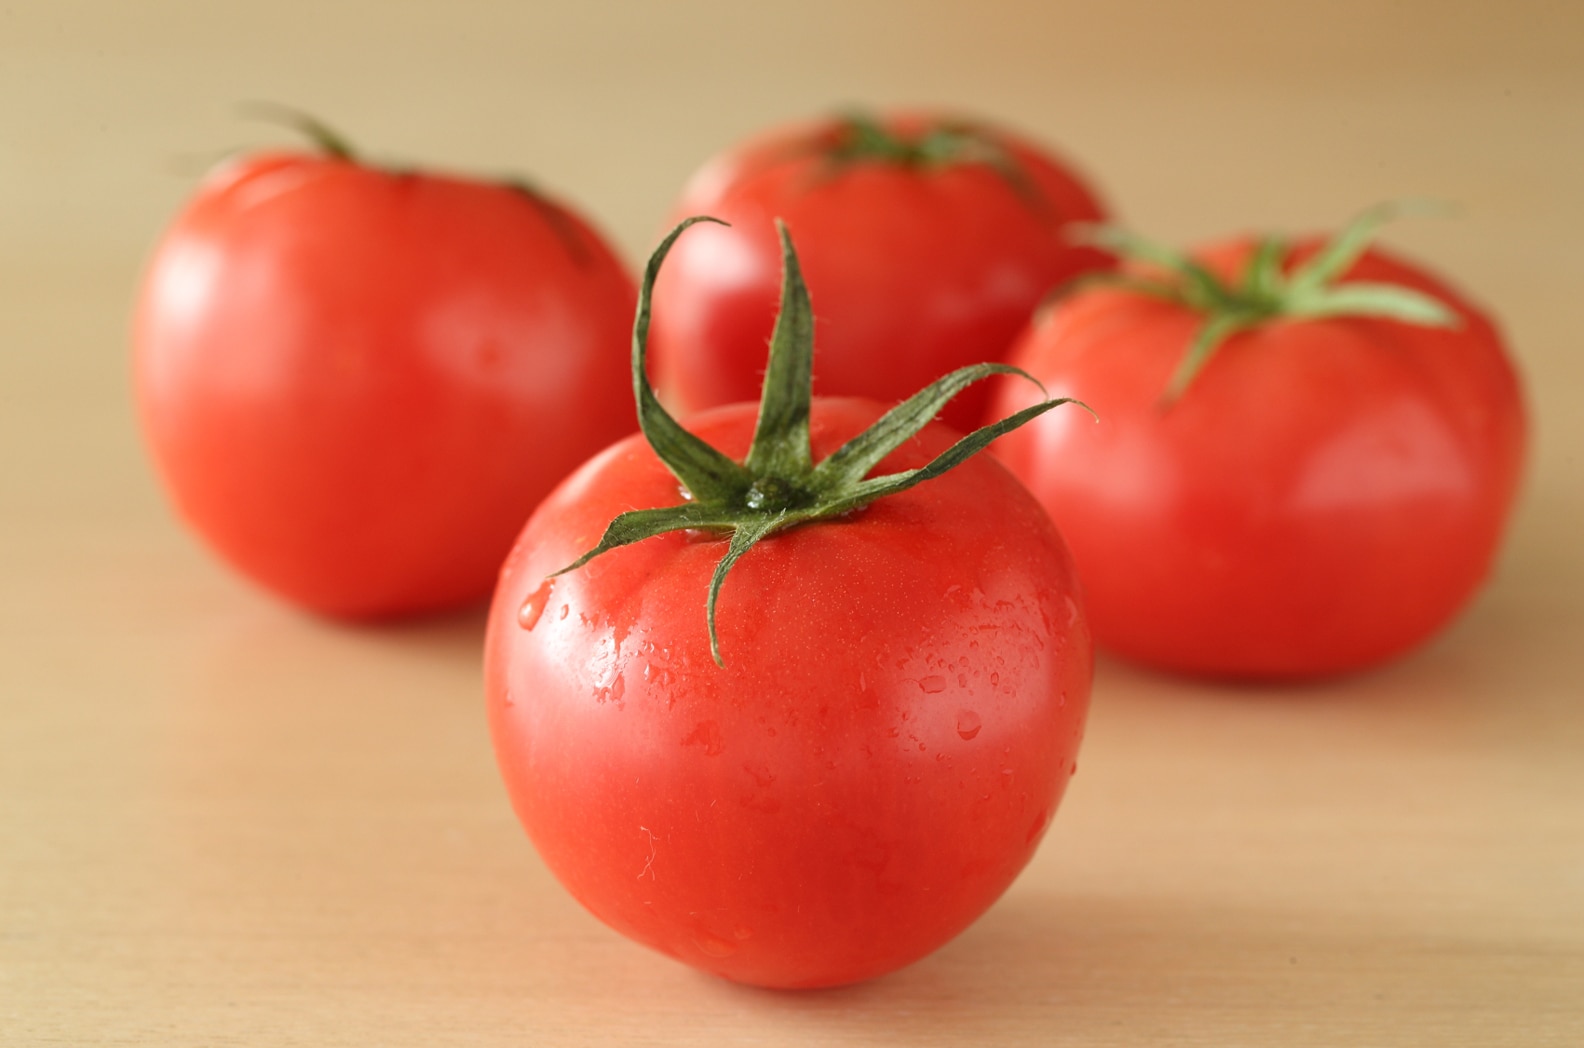 トマトの湯むきの方法をていねいに解説。トマトを扱うコツとおすすめレシピ3選も